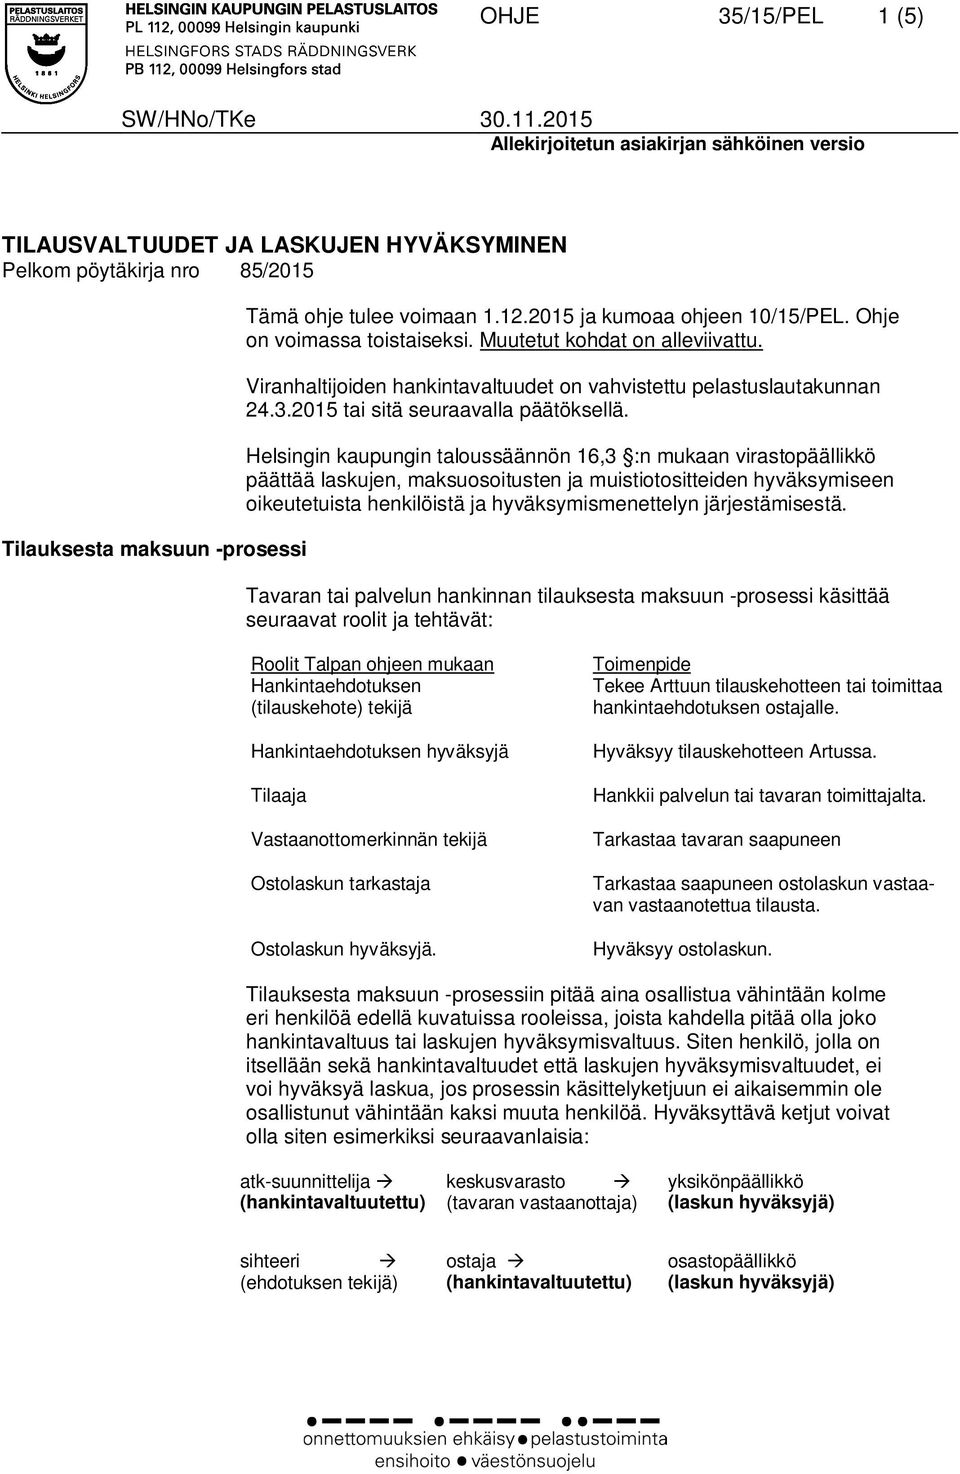 Helsingin kaupungin taloussäännön 16,3 :n mukaan virastopäällikkö päättää laskujen, maksuosoitusten ja muistiotositteiden hyväksymiseen oikeutetuista henkilöistä ja hyväksymismenettelyn